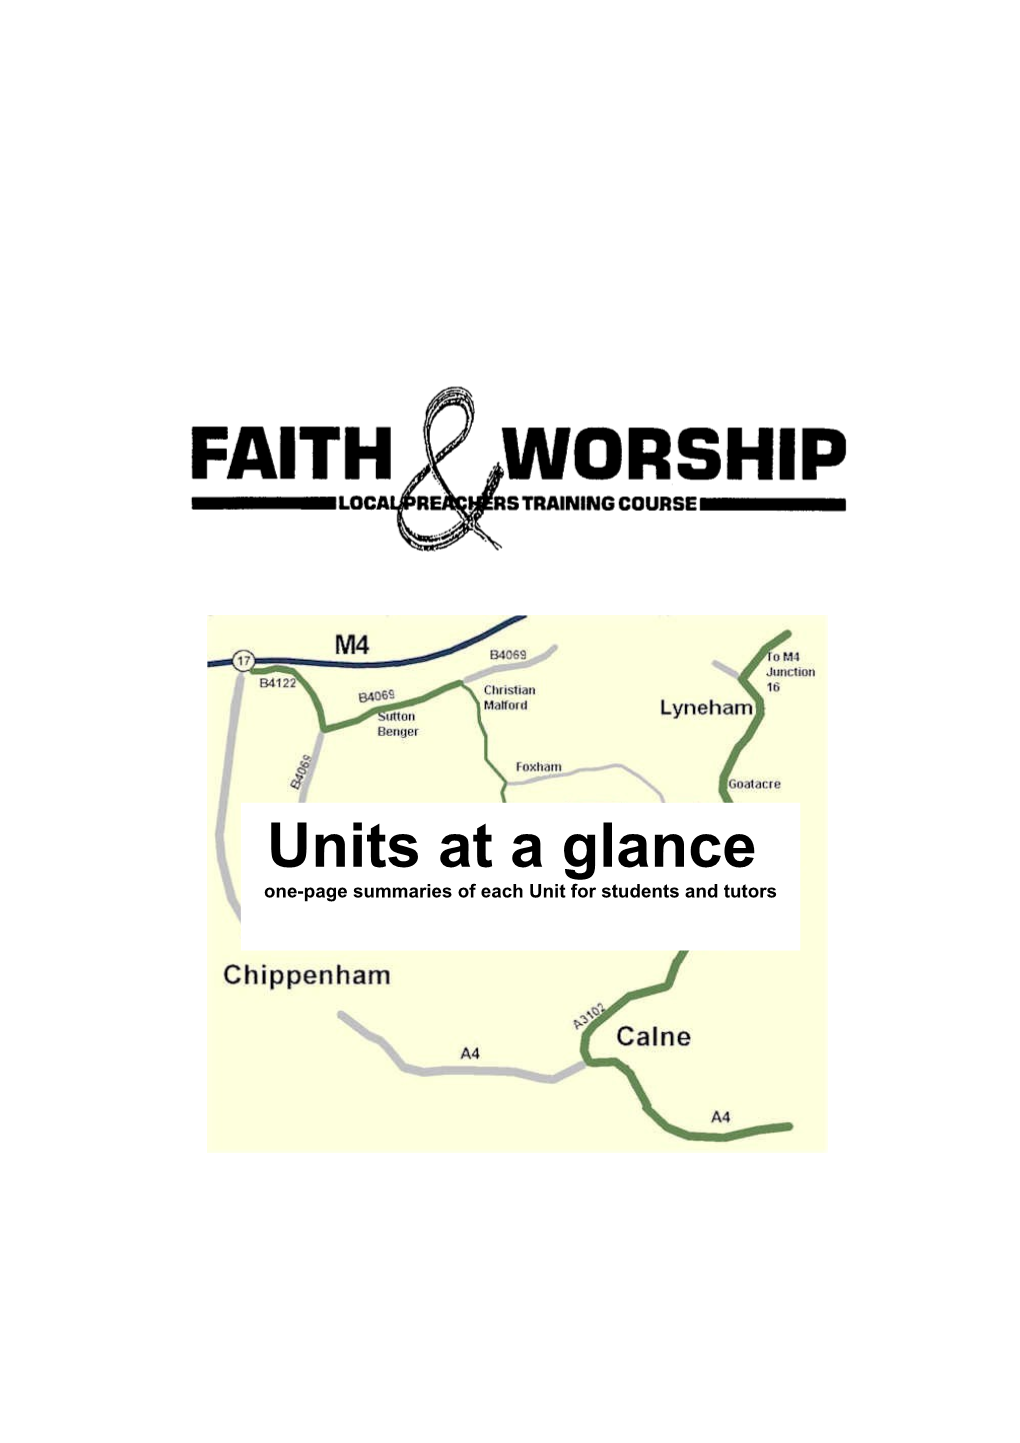 Faith & Worship at a Glance